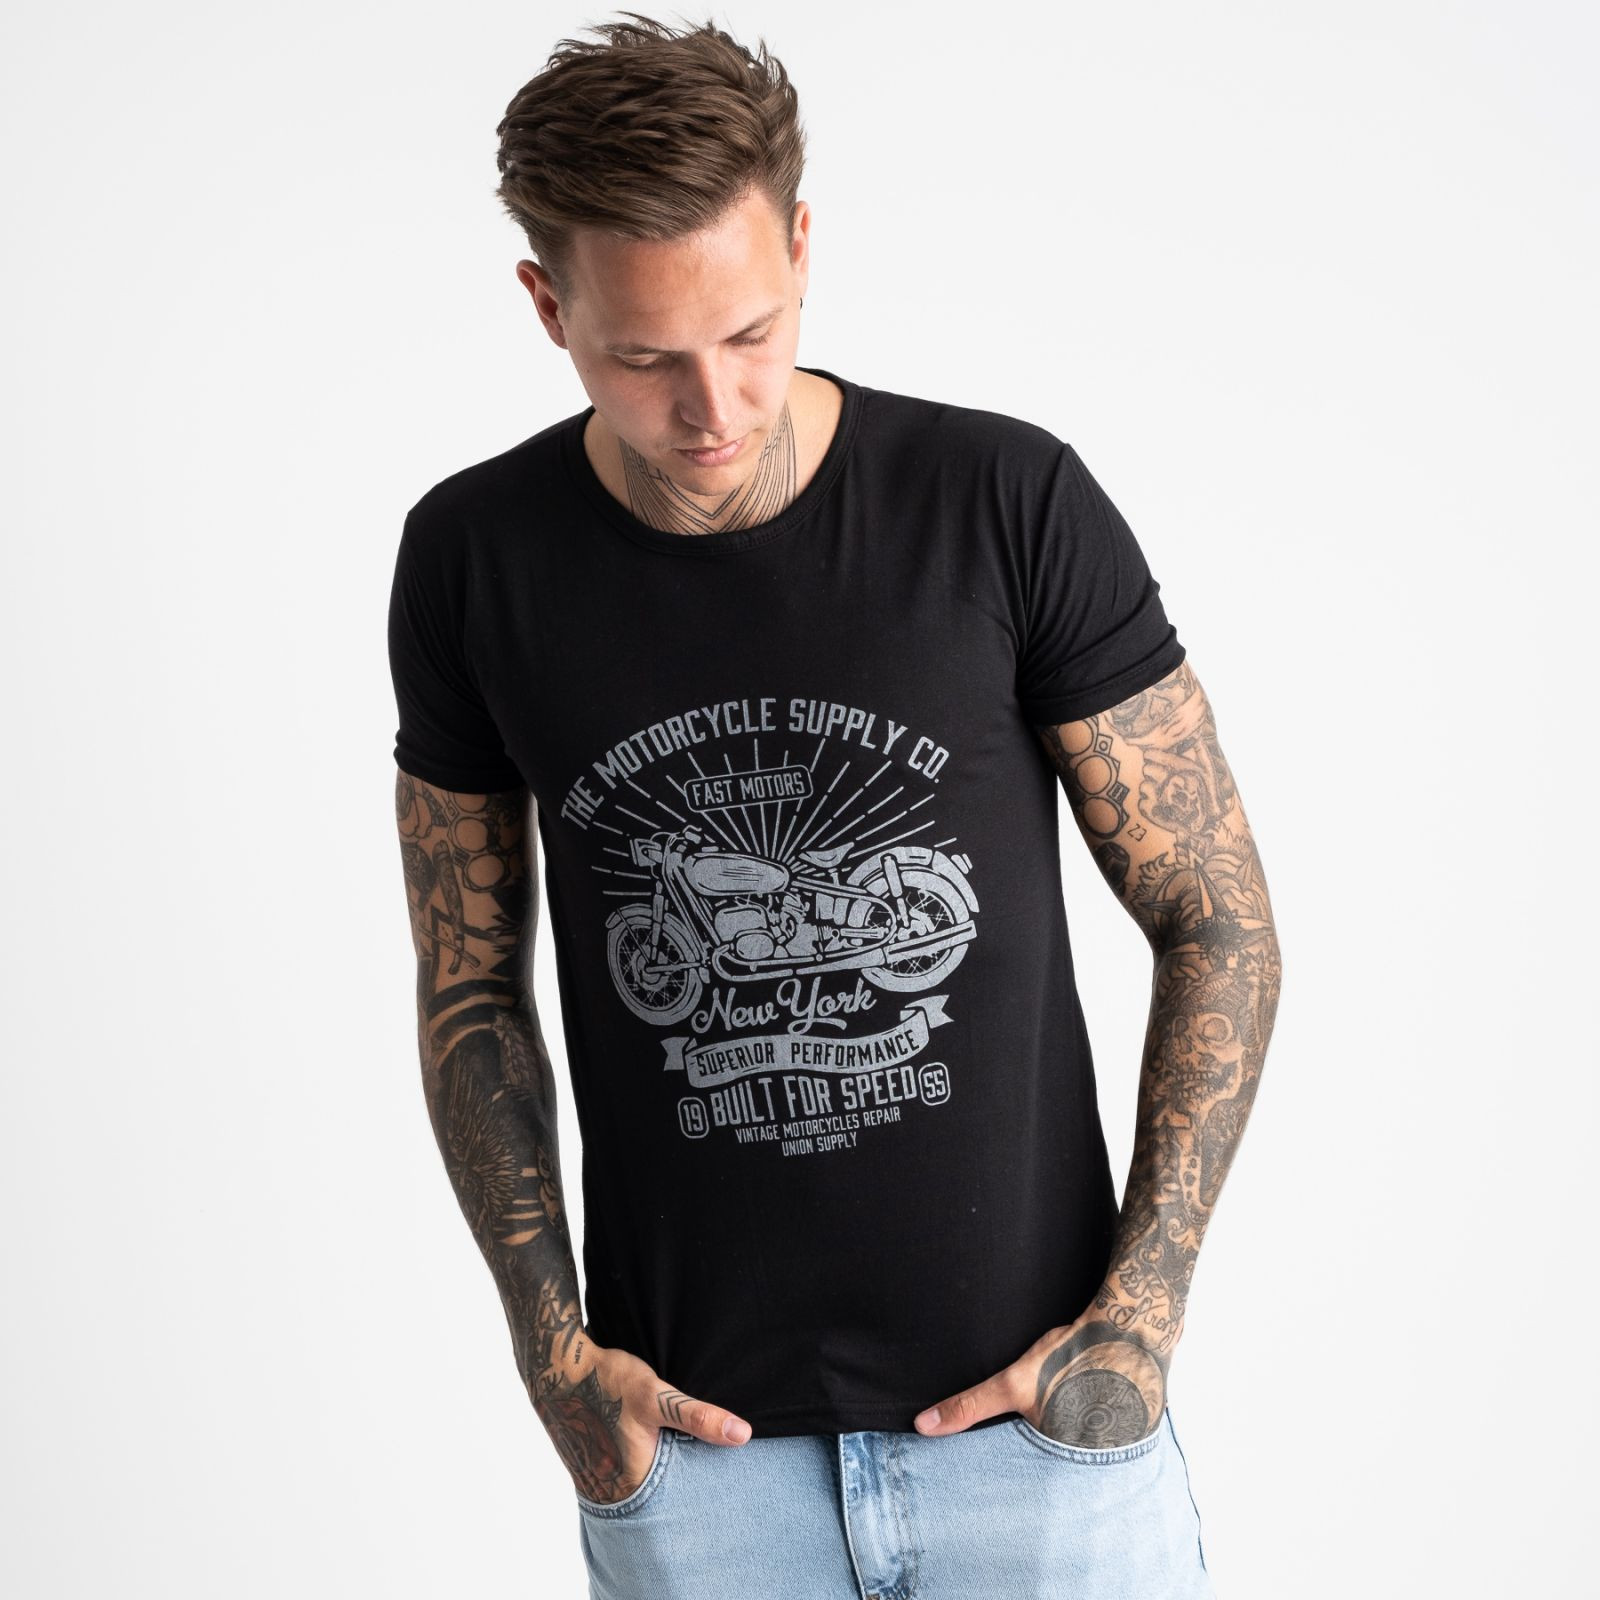 2626-1 черная футболка мужская с принтом (4 ед. размеры: M.L.XL.2XL)